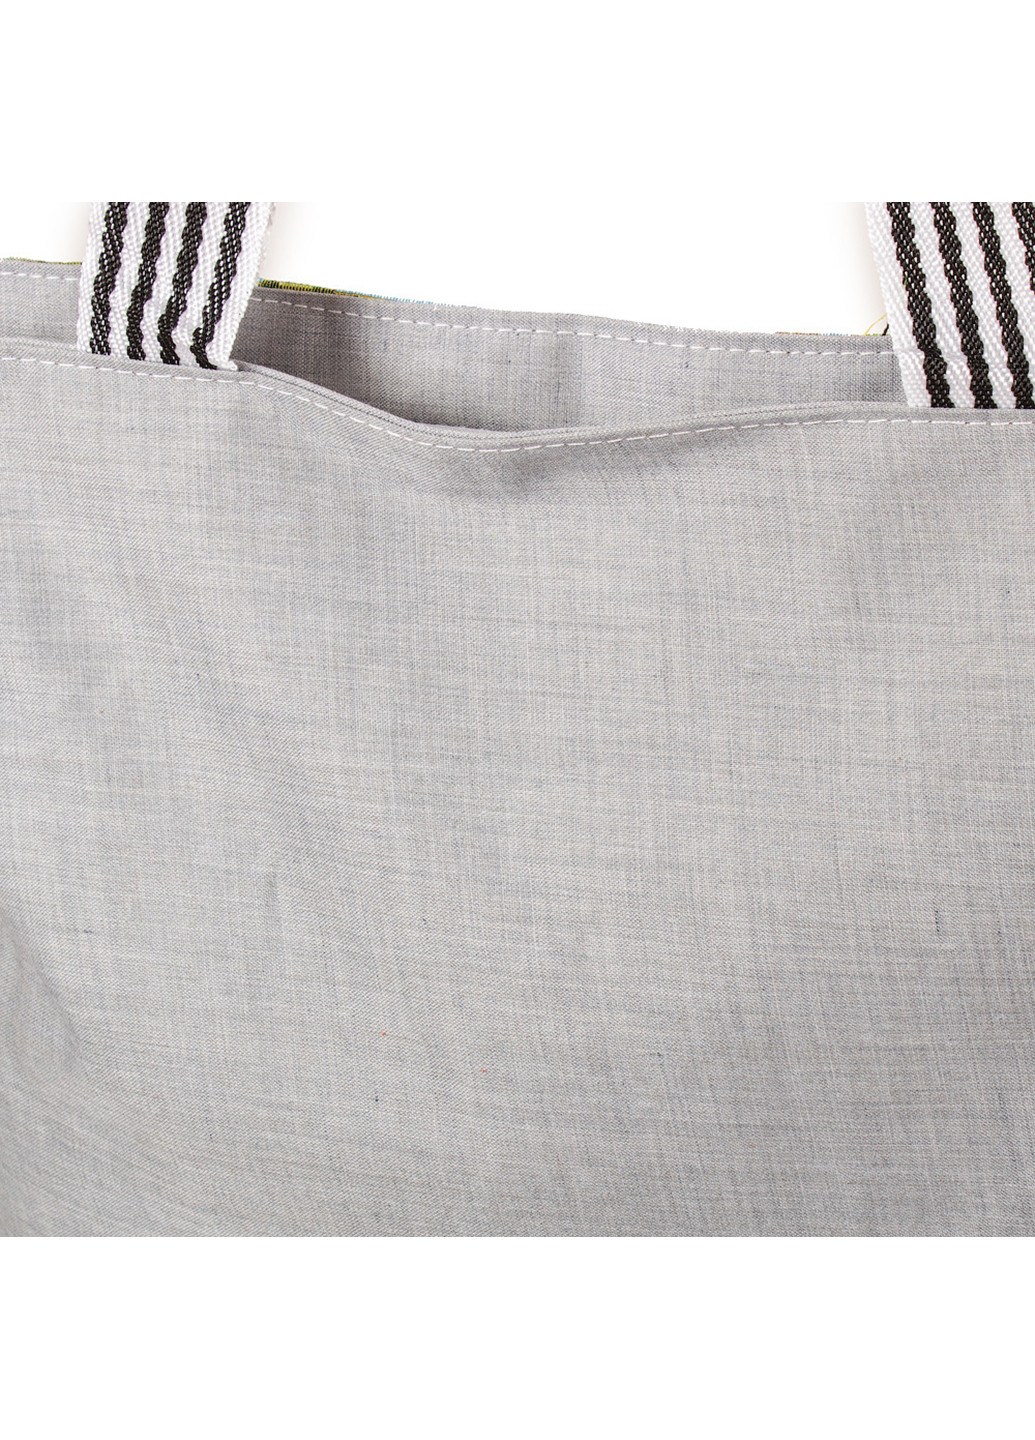 Женская пляжная тканевая сумка 37х37,5х10 см Valiria Fashion (252126849)